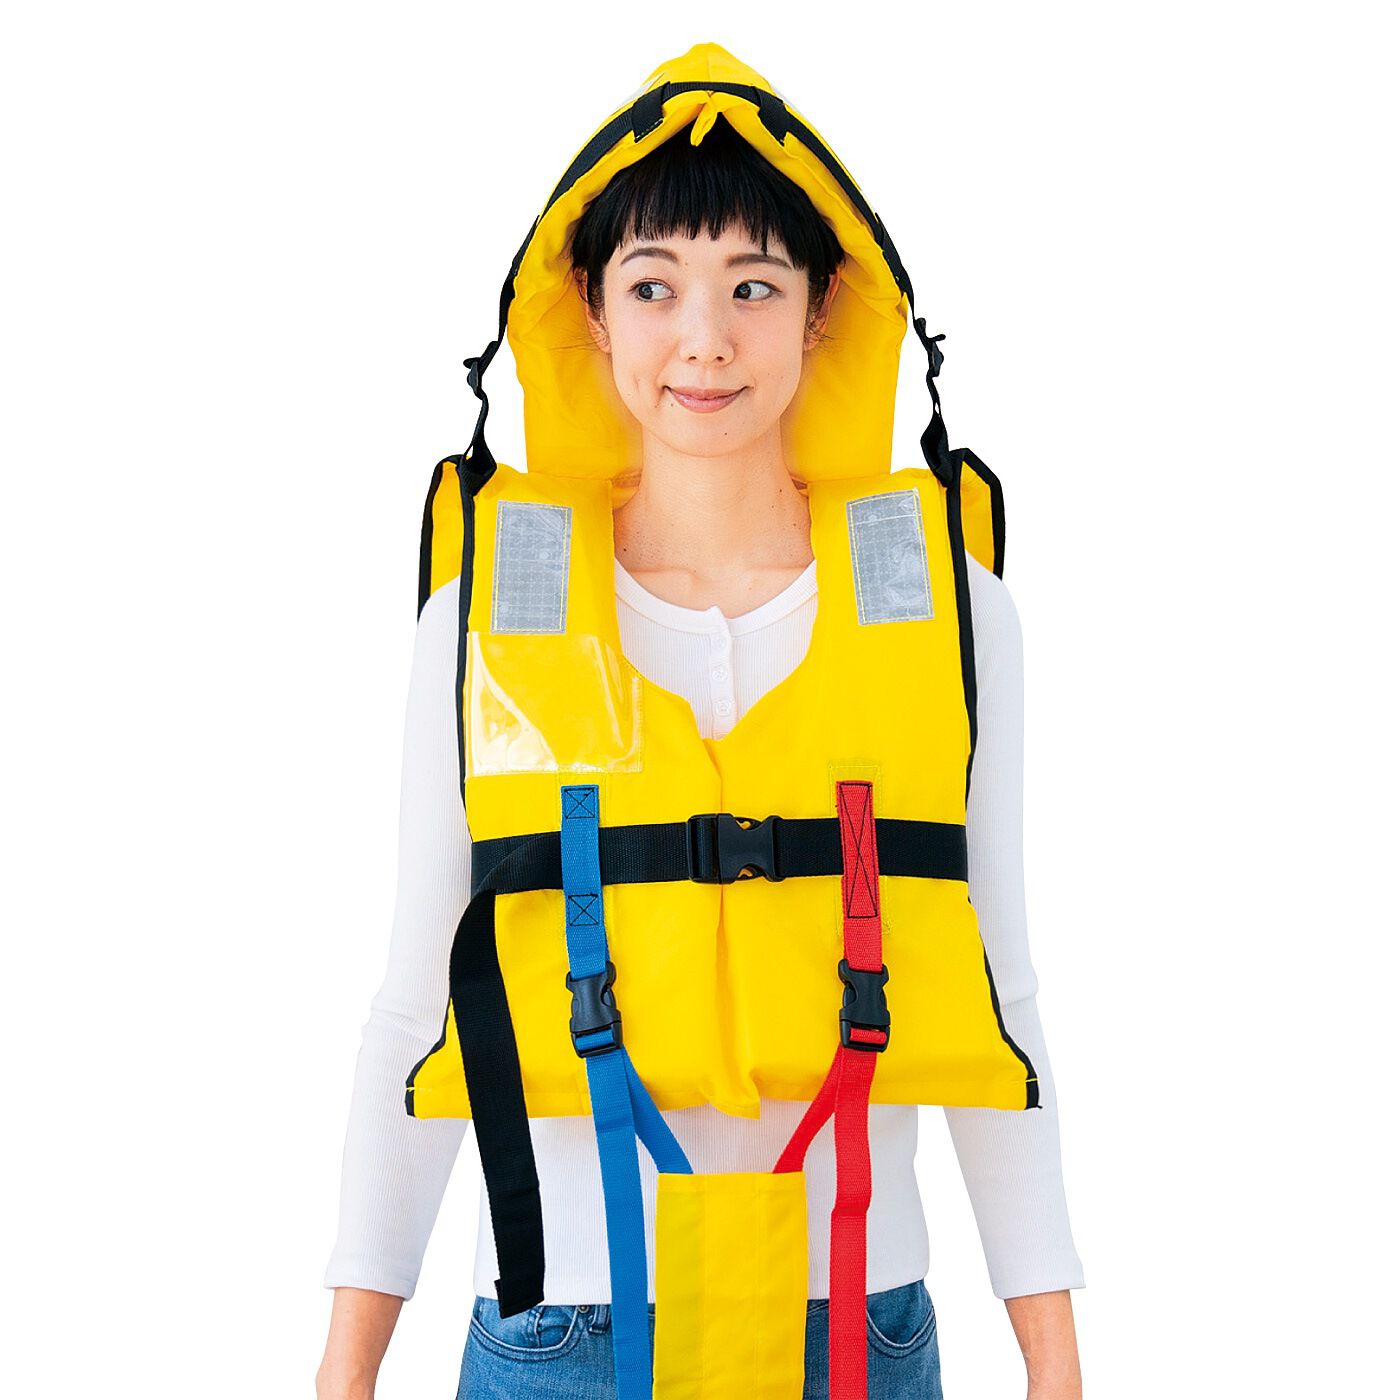 防護頭巾付きで頭もガード 水害対策に備えたい ライフジャケット大人用